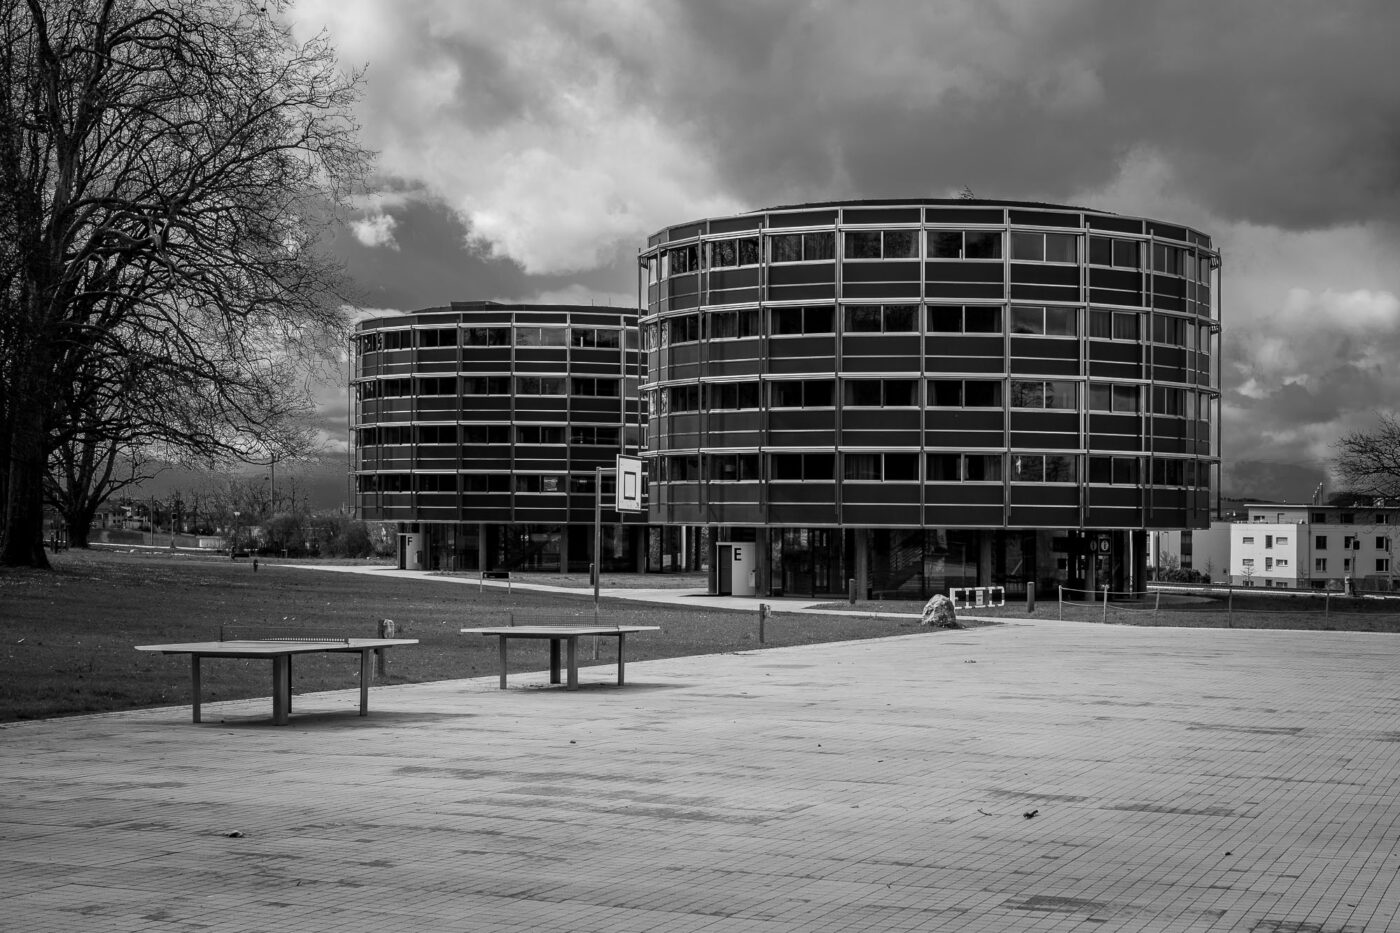 Die beiden Hotelgebäude des Centre Loewenberg in Murten/Morat, die mit Ihrer runden Architektur an Raumschiffe erinnerten.